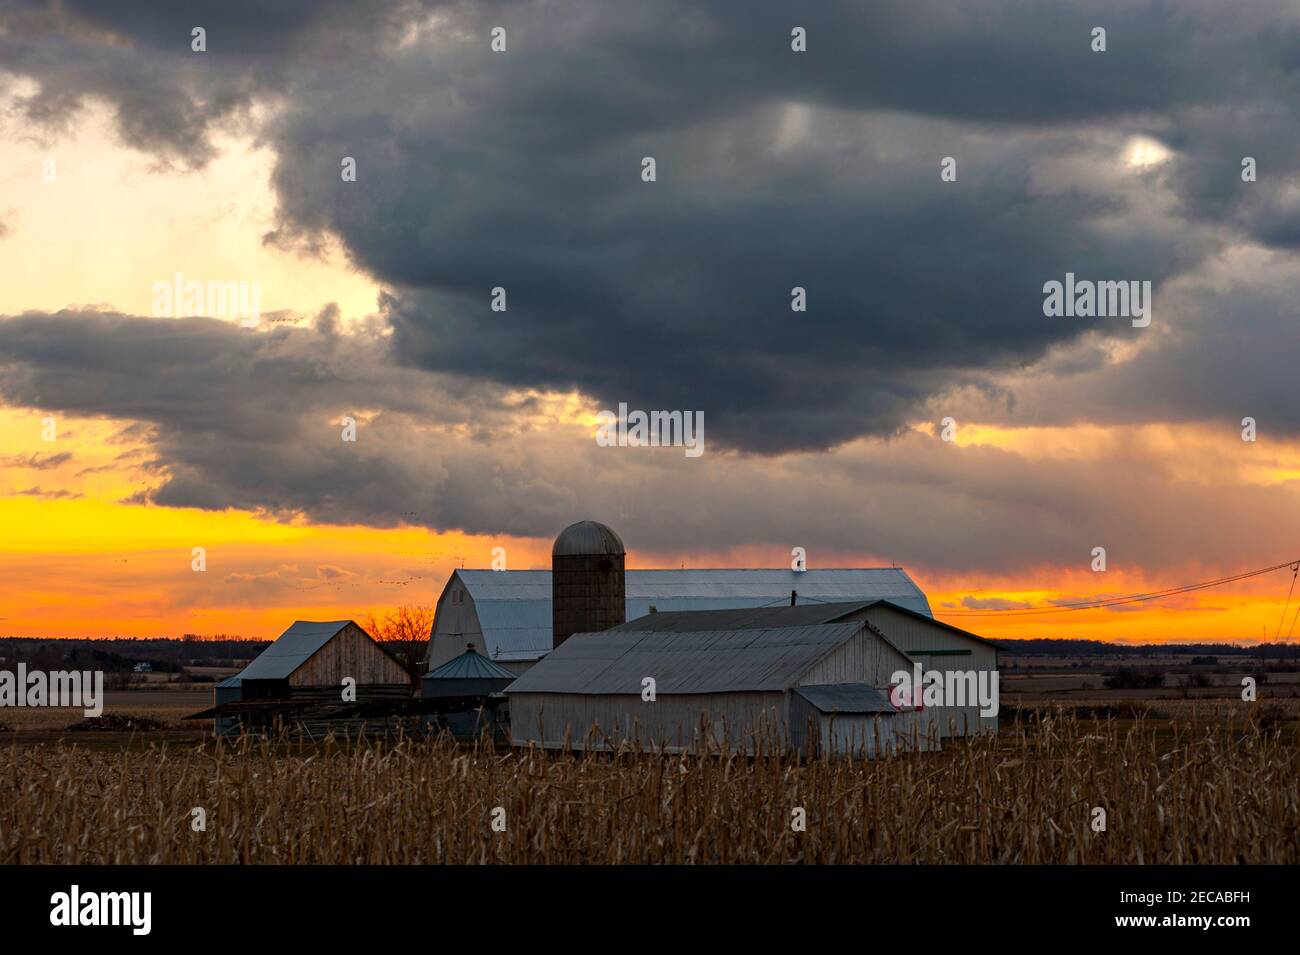 Sunset on the farm Stock Photo